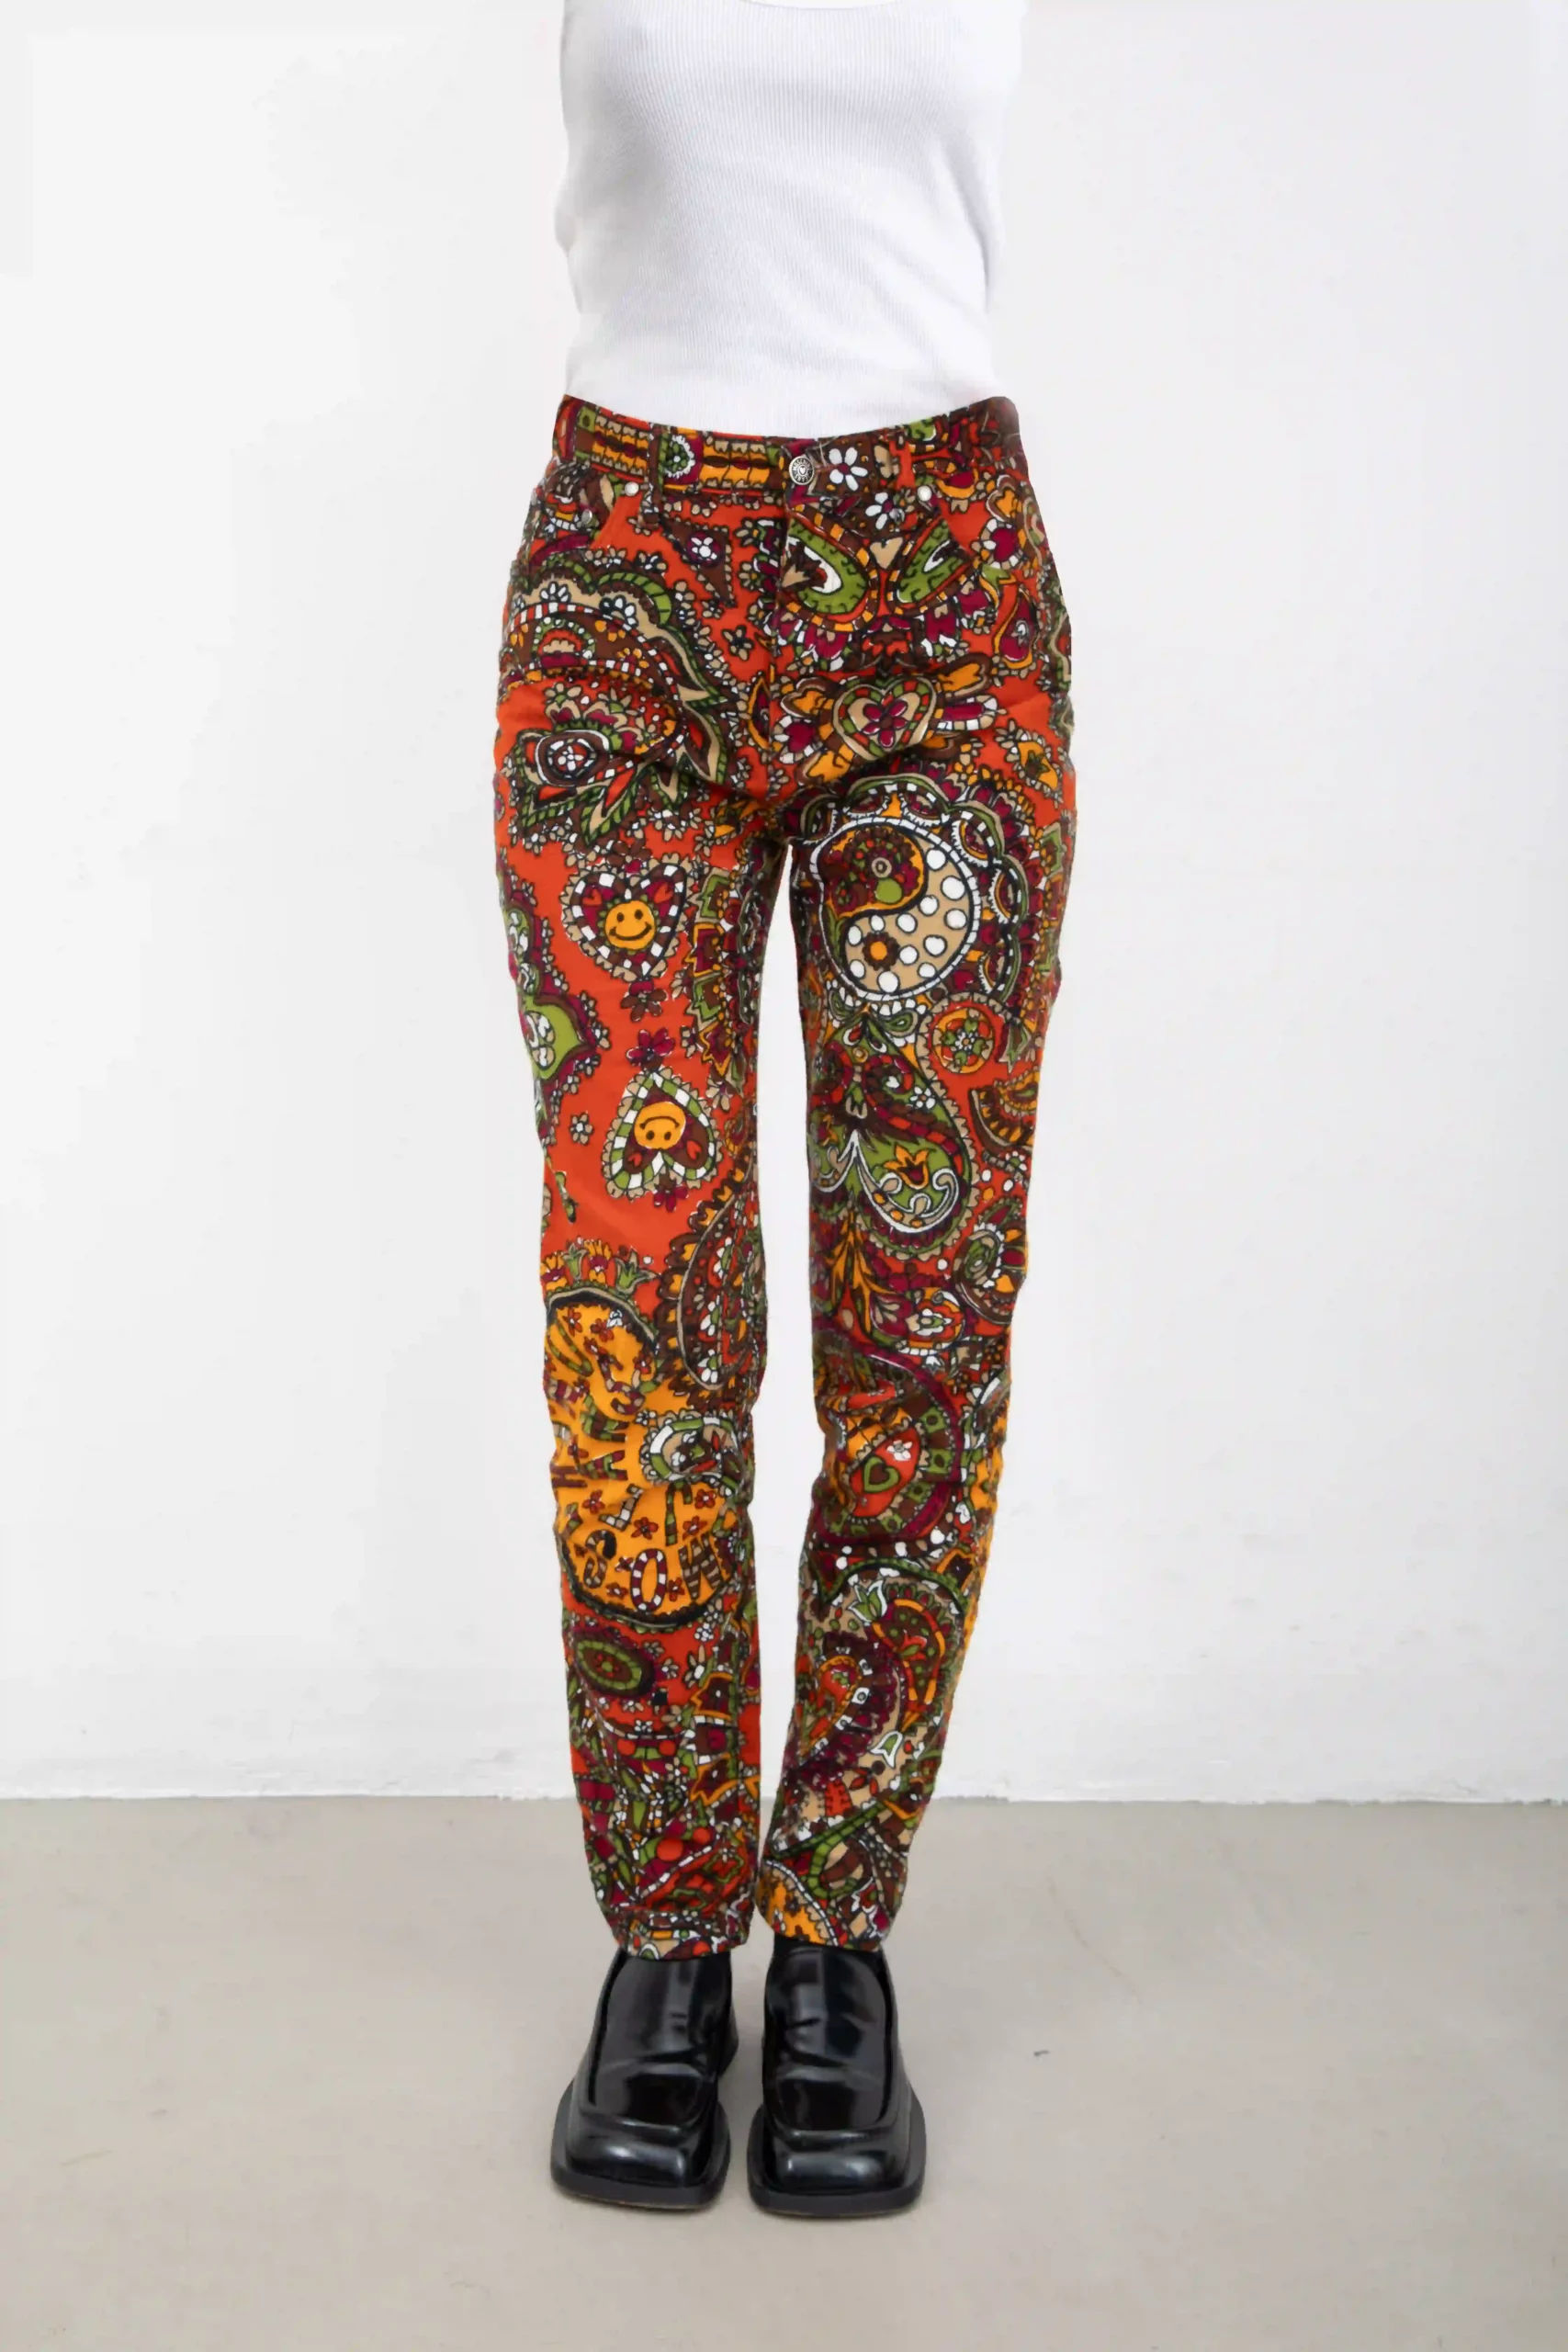 Pantalone Moschino Jeans multicolor sui toni mattone, in 100% cotone stampato ad effetto velluto. Motivo floreale, con smile, molto hippie e divertente. Modello a sigaretta, tipo jeans. Con patch in metallo simbolo della pace sulla tasca posteriore.